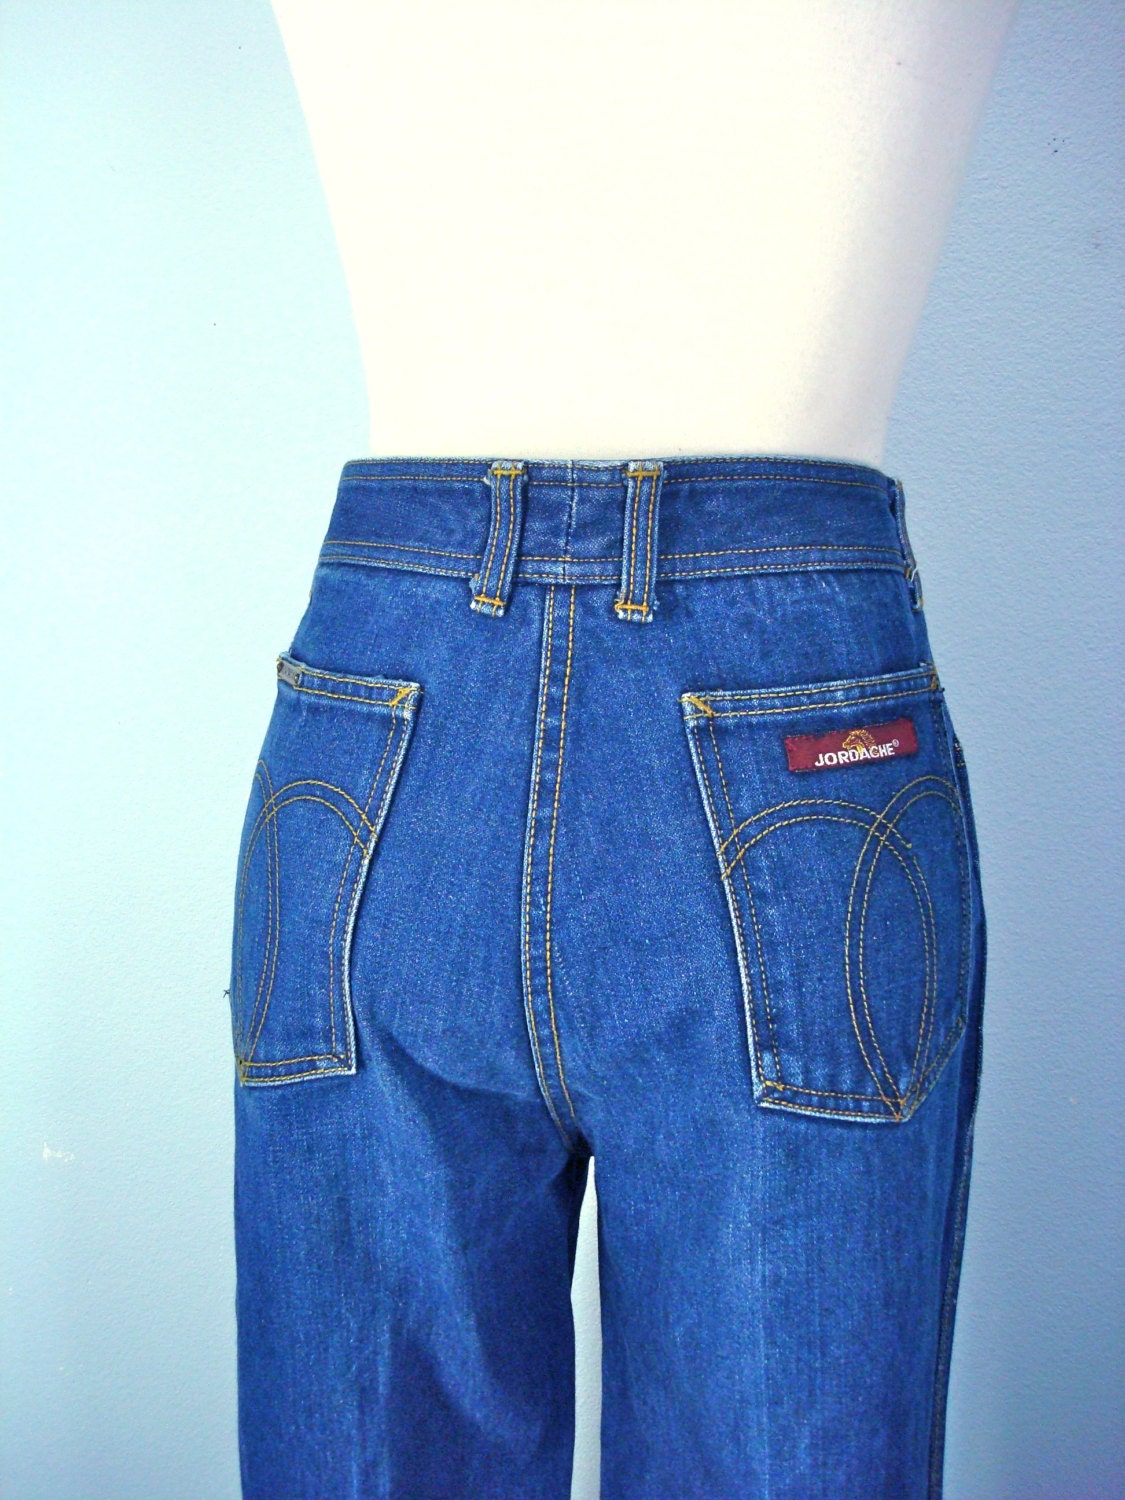 Vintage 70s Jeans / JORDACHE Mens Jeans / 1970s Denim / Unisex